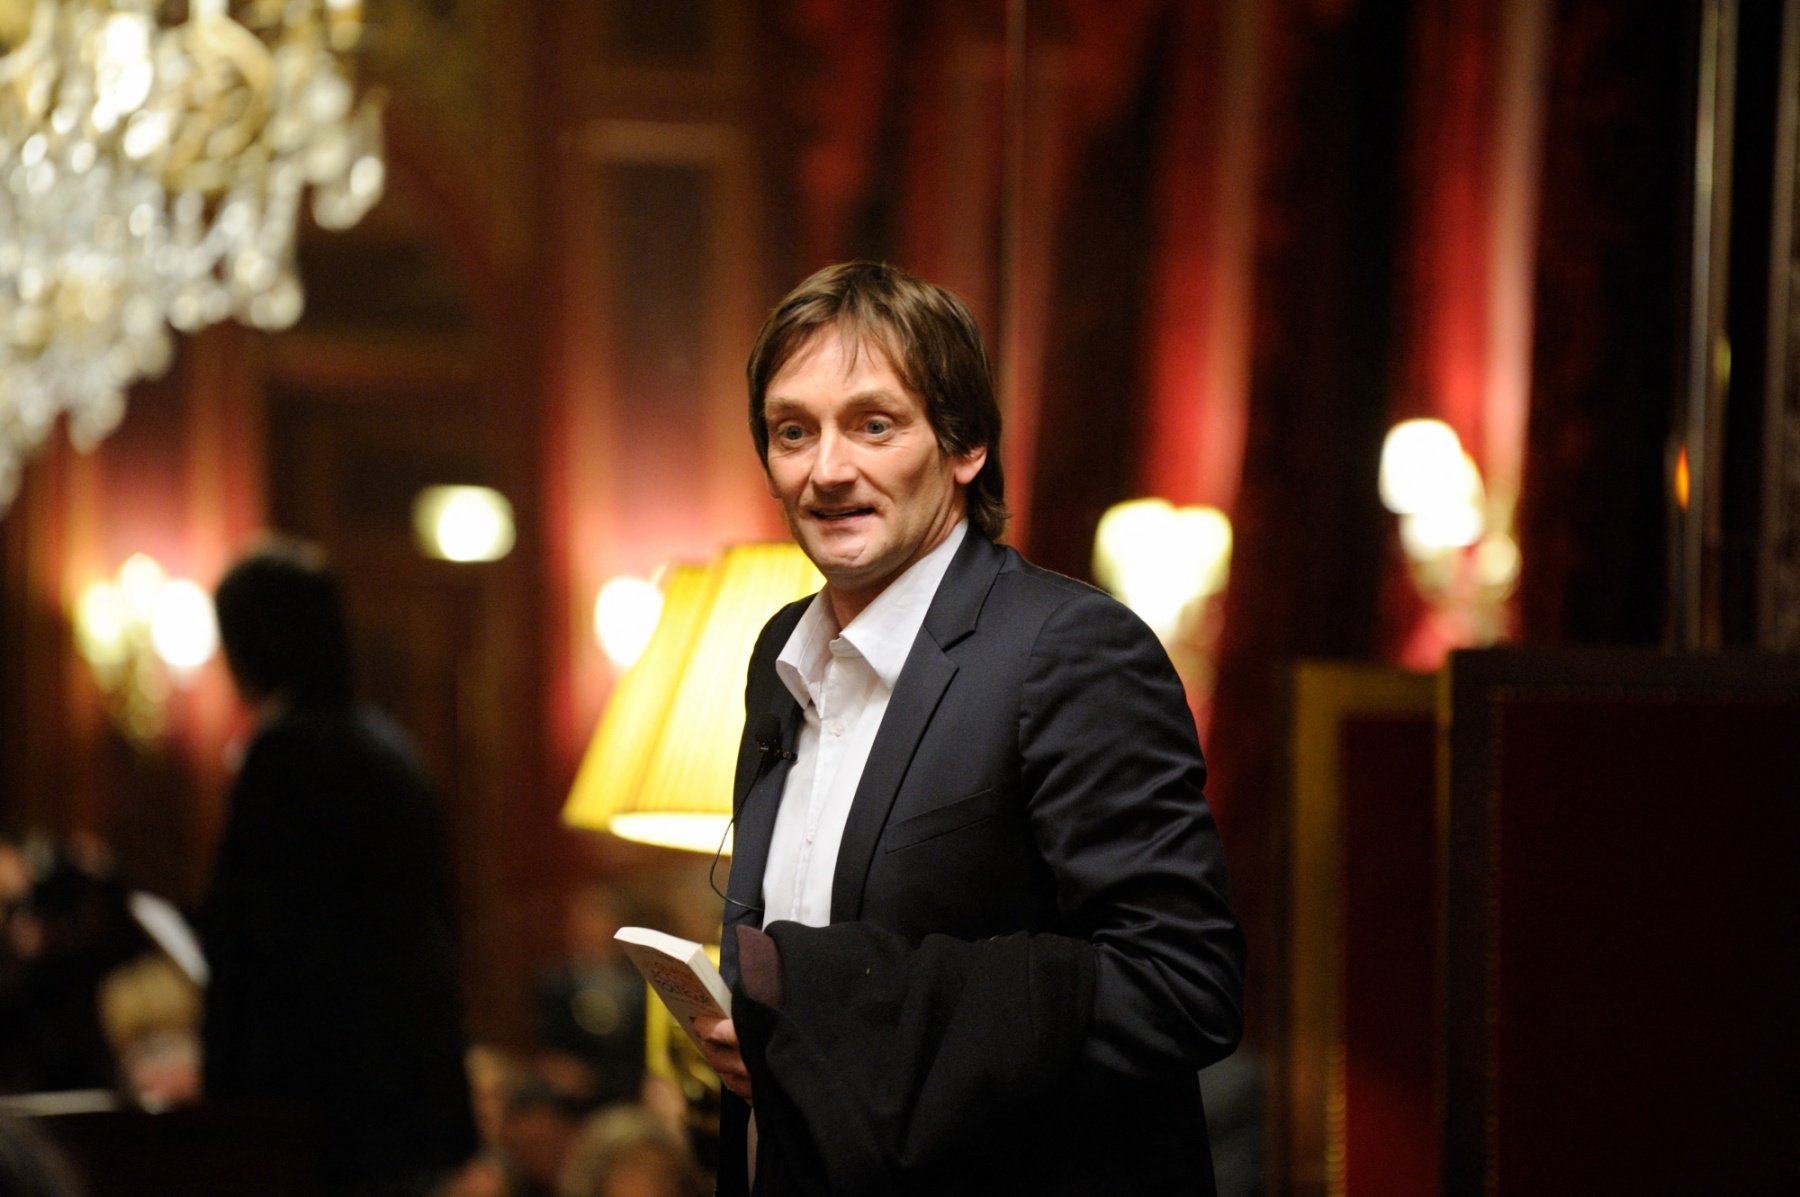 Pierre Palmade au 150e anniversaire de l'Intercontinental Paris Grand Hotel, en 2012.